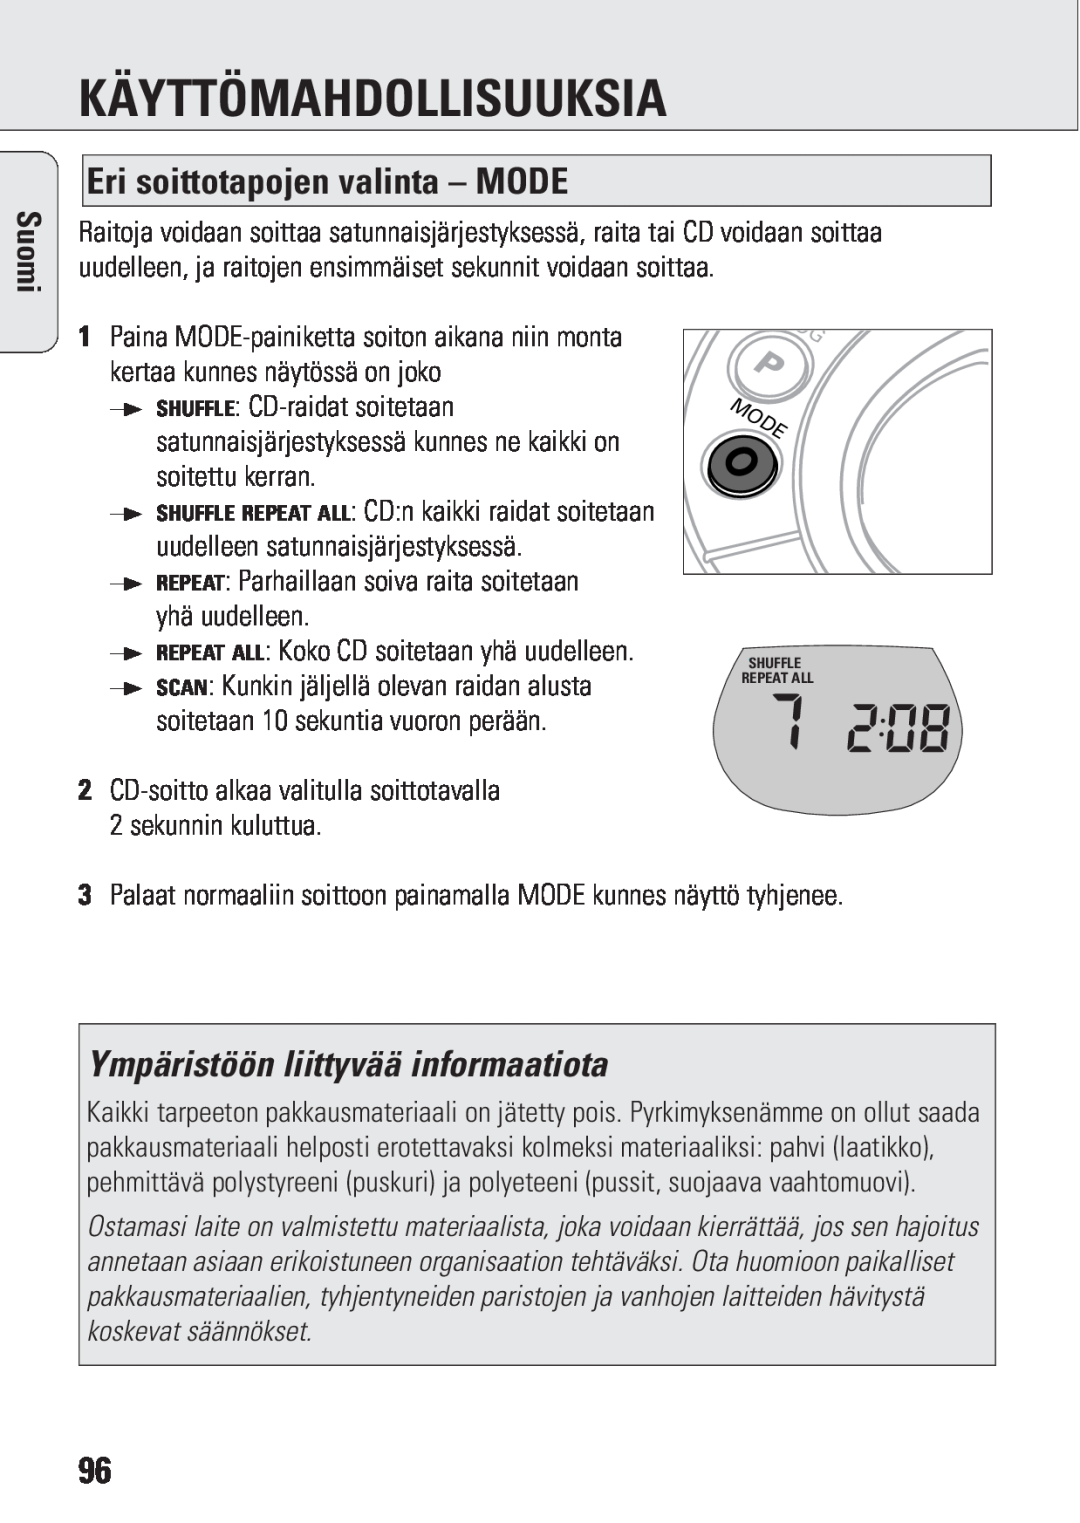 Philips ACT 7583 manual Eri soittotapojen valinta - MODE, Ympäristöön liittyvää informaatiota, Käyttömahdollisuuksia, Suomi 